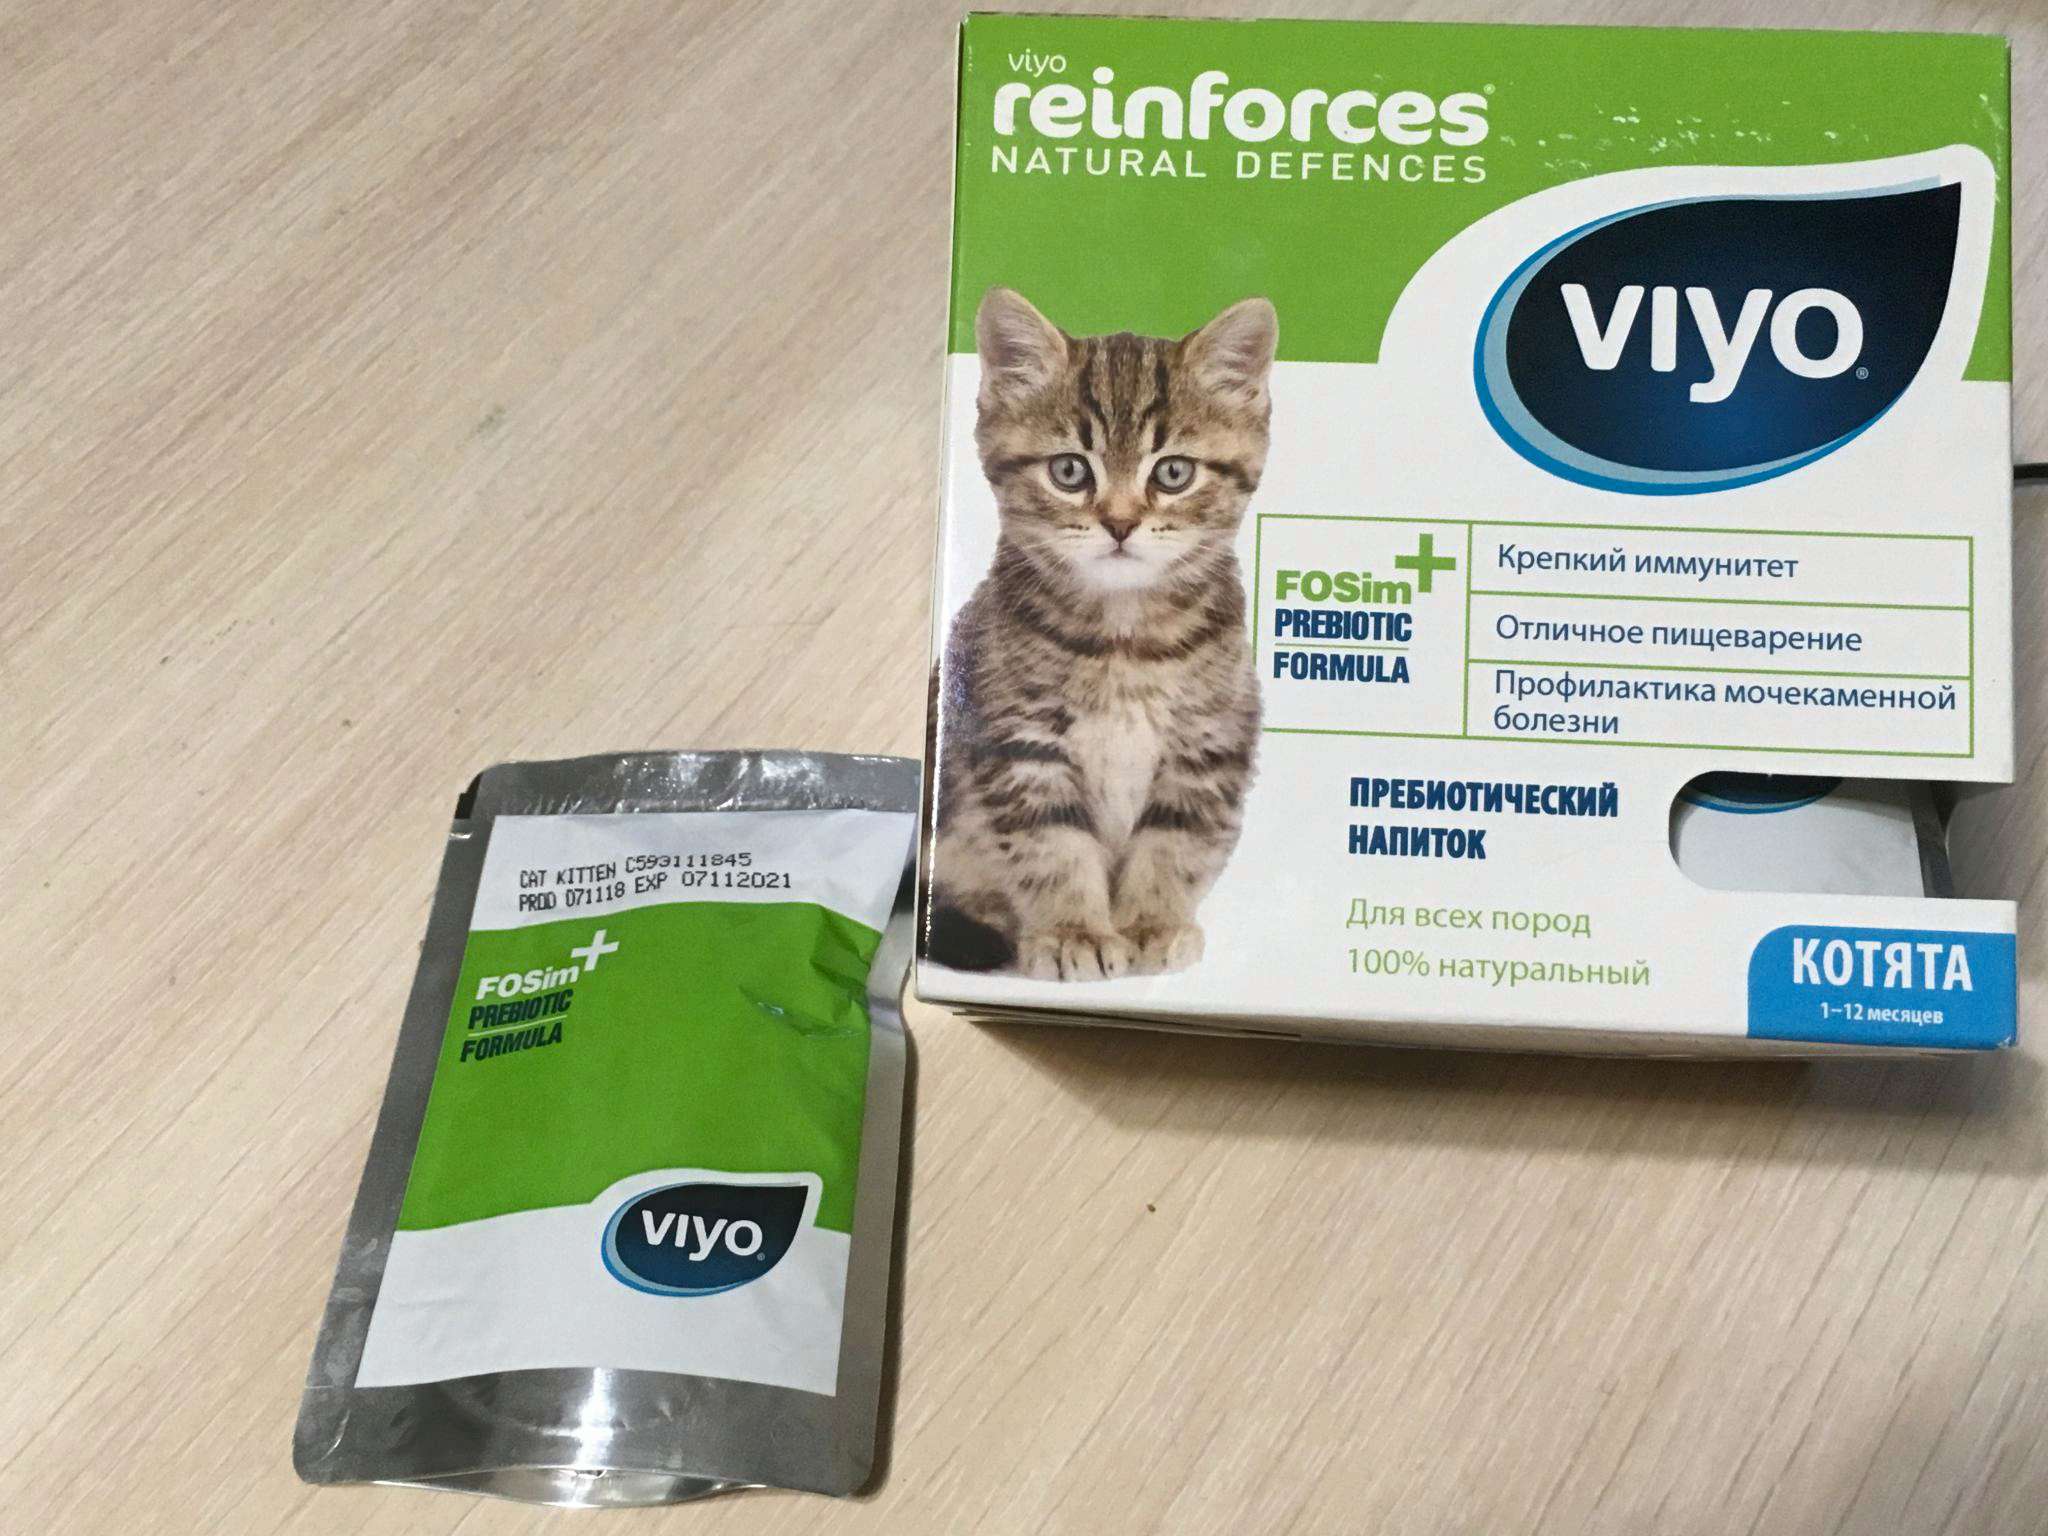 Питательный напиток для кошек viyo для укрепления иммунитета